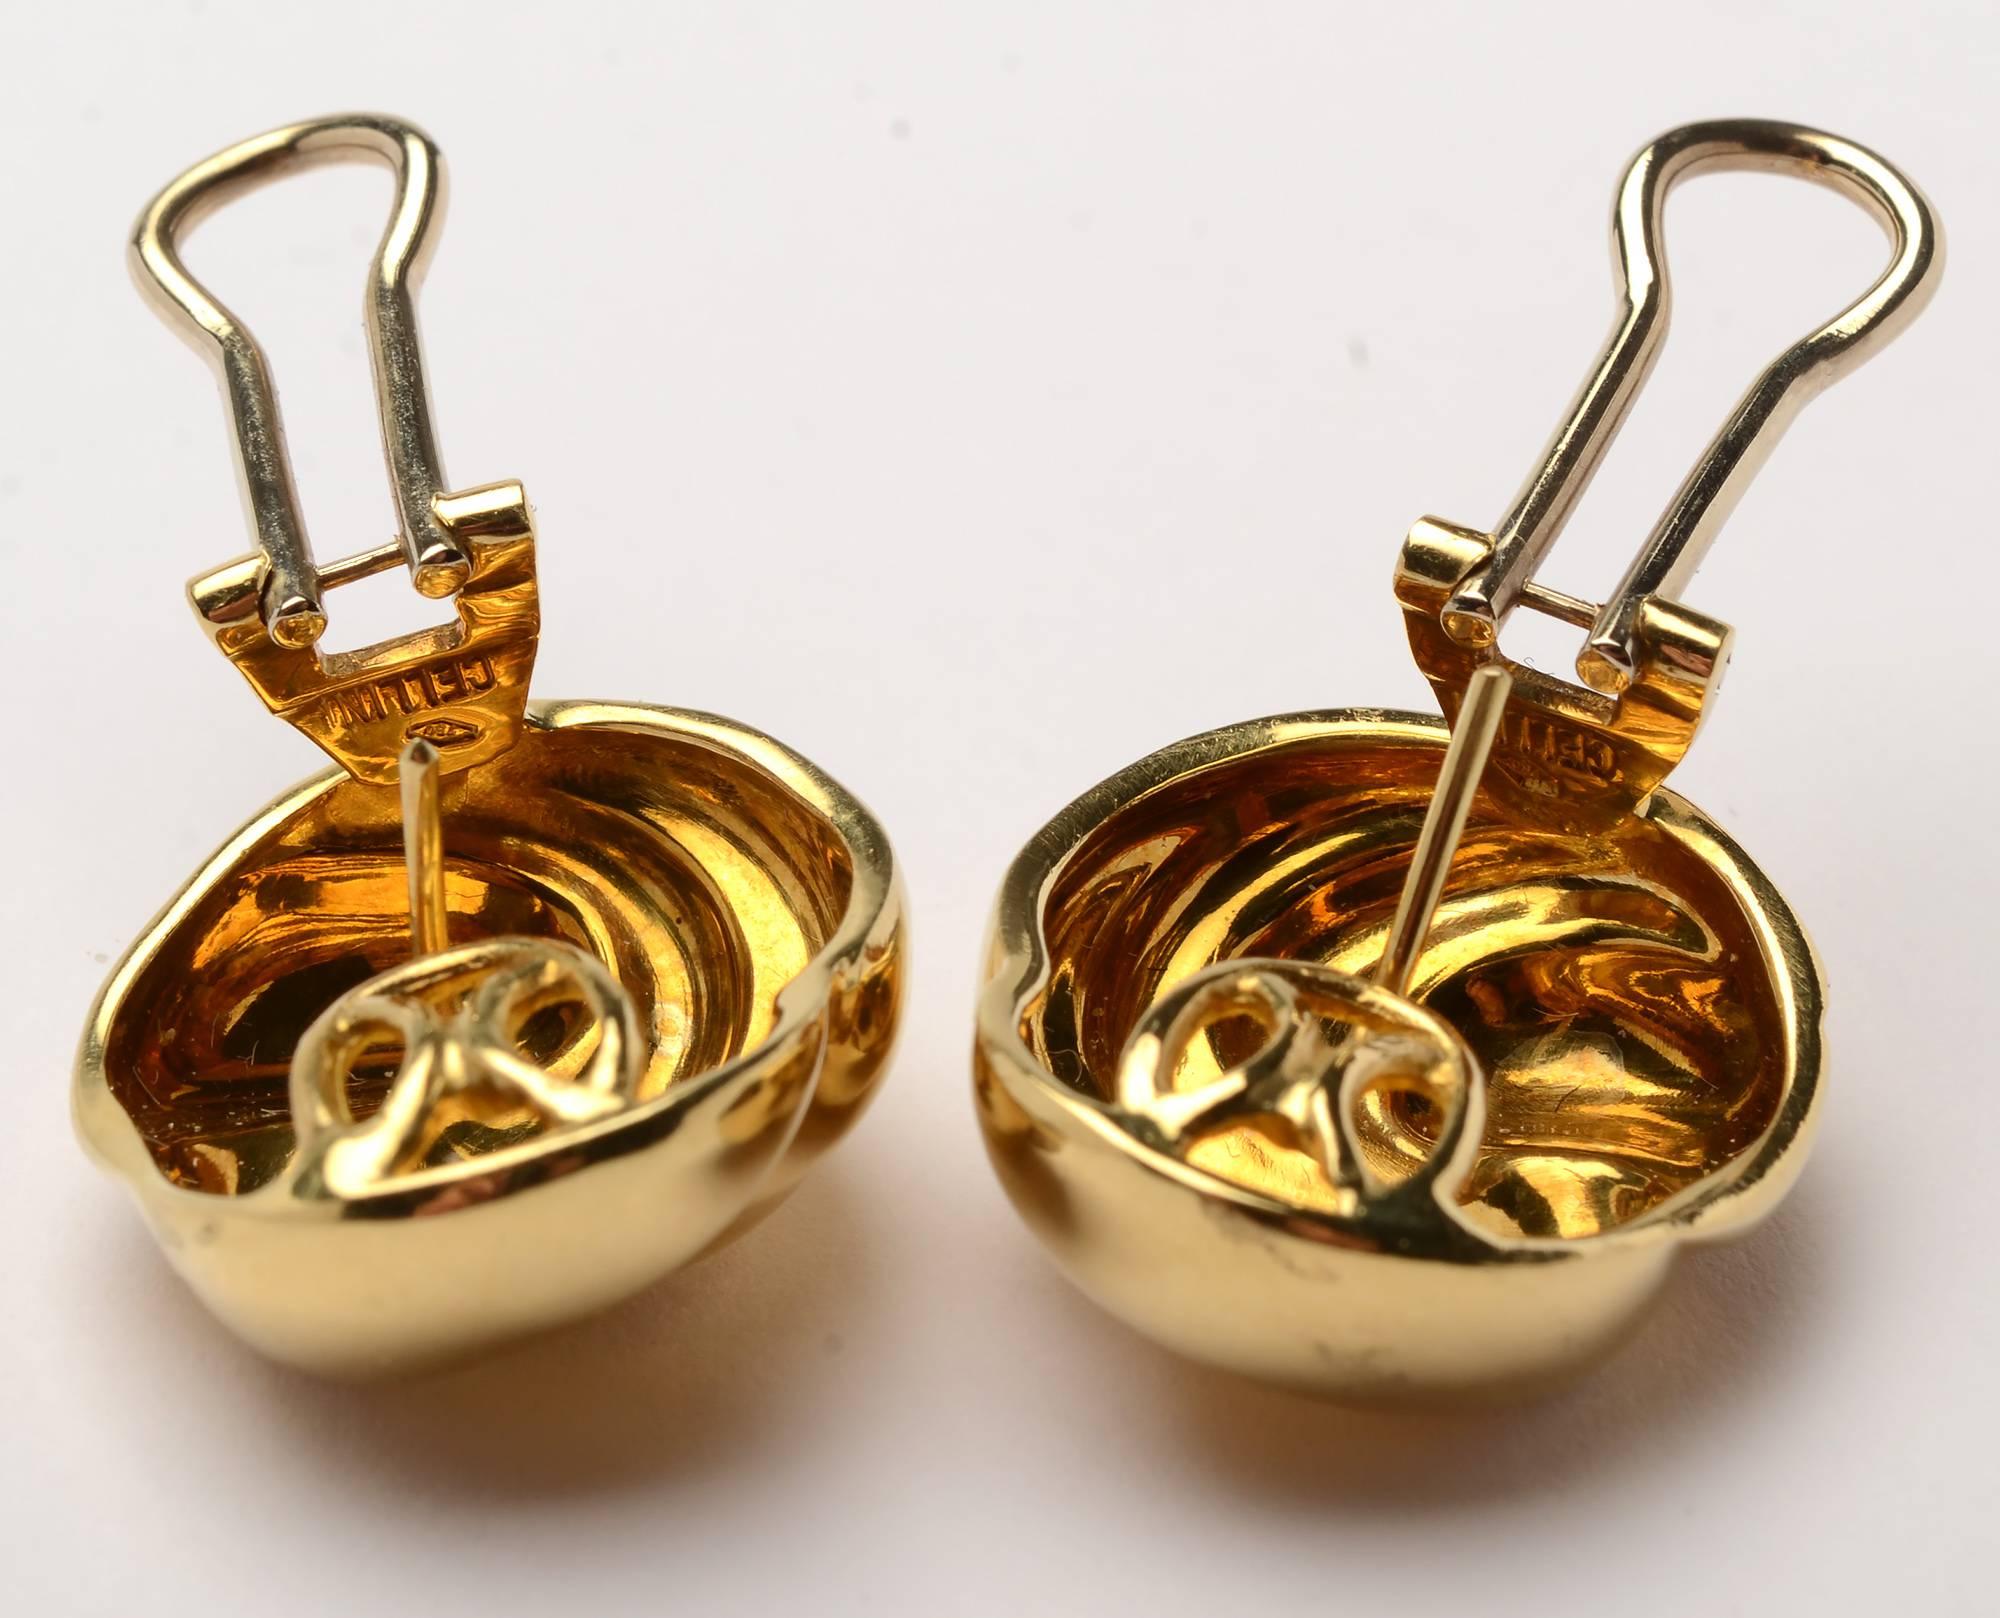 Elegante und vielseitige Ohrringe aus 18 Karat Gold von Cellini. Doppelte Wirbel in verschiedenen Dimensionen erzeugen eine schöne Bewegung. Die Ohrringe sind 15/16